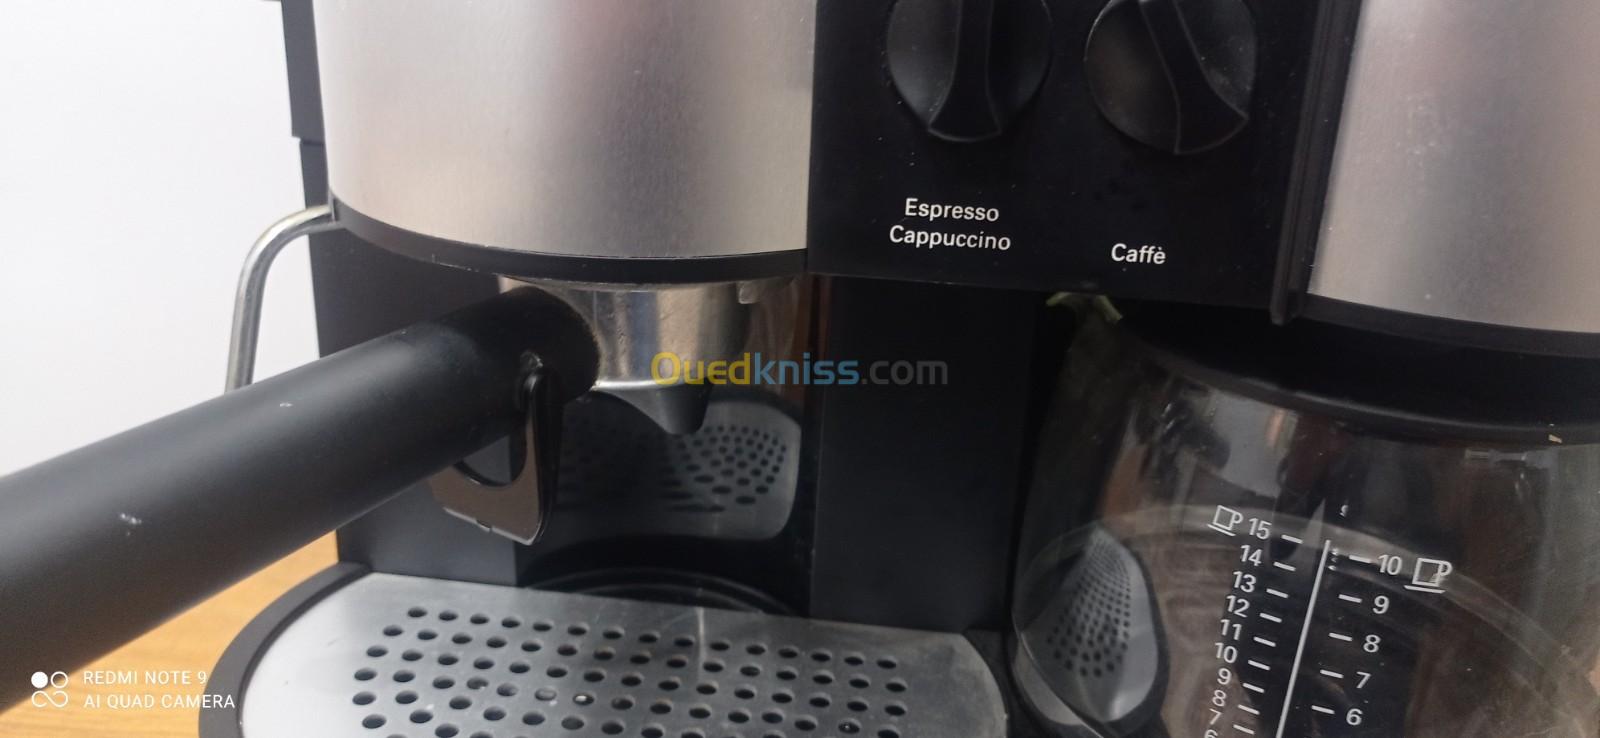 Café machine 